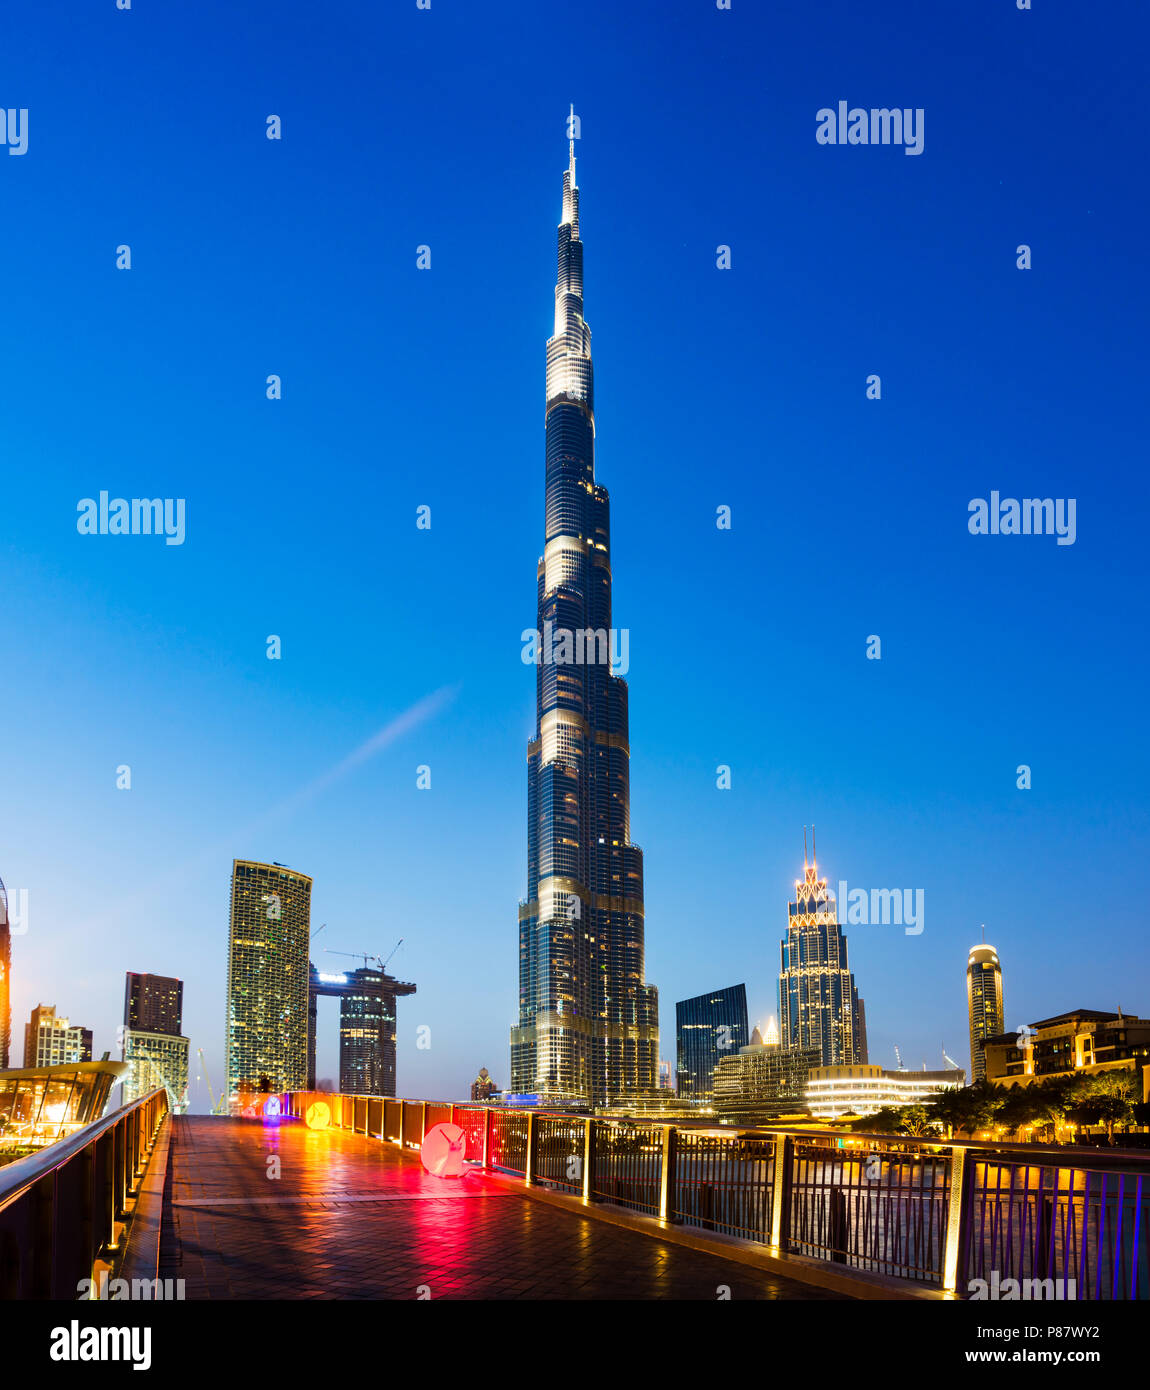 Dubai, Vereinigte Arabische Emirate - 18. Mai 2018: Burj Khailfa, das höchste Gebäude der Welt, hoch über der Innenstadt von Dubai bei Nacht Stockfoto